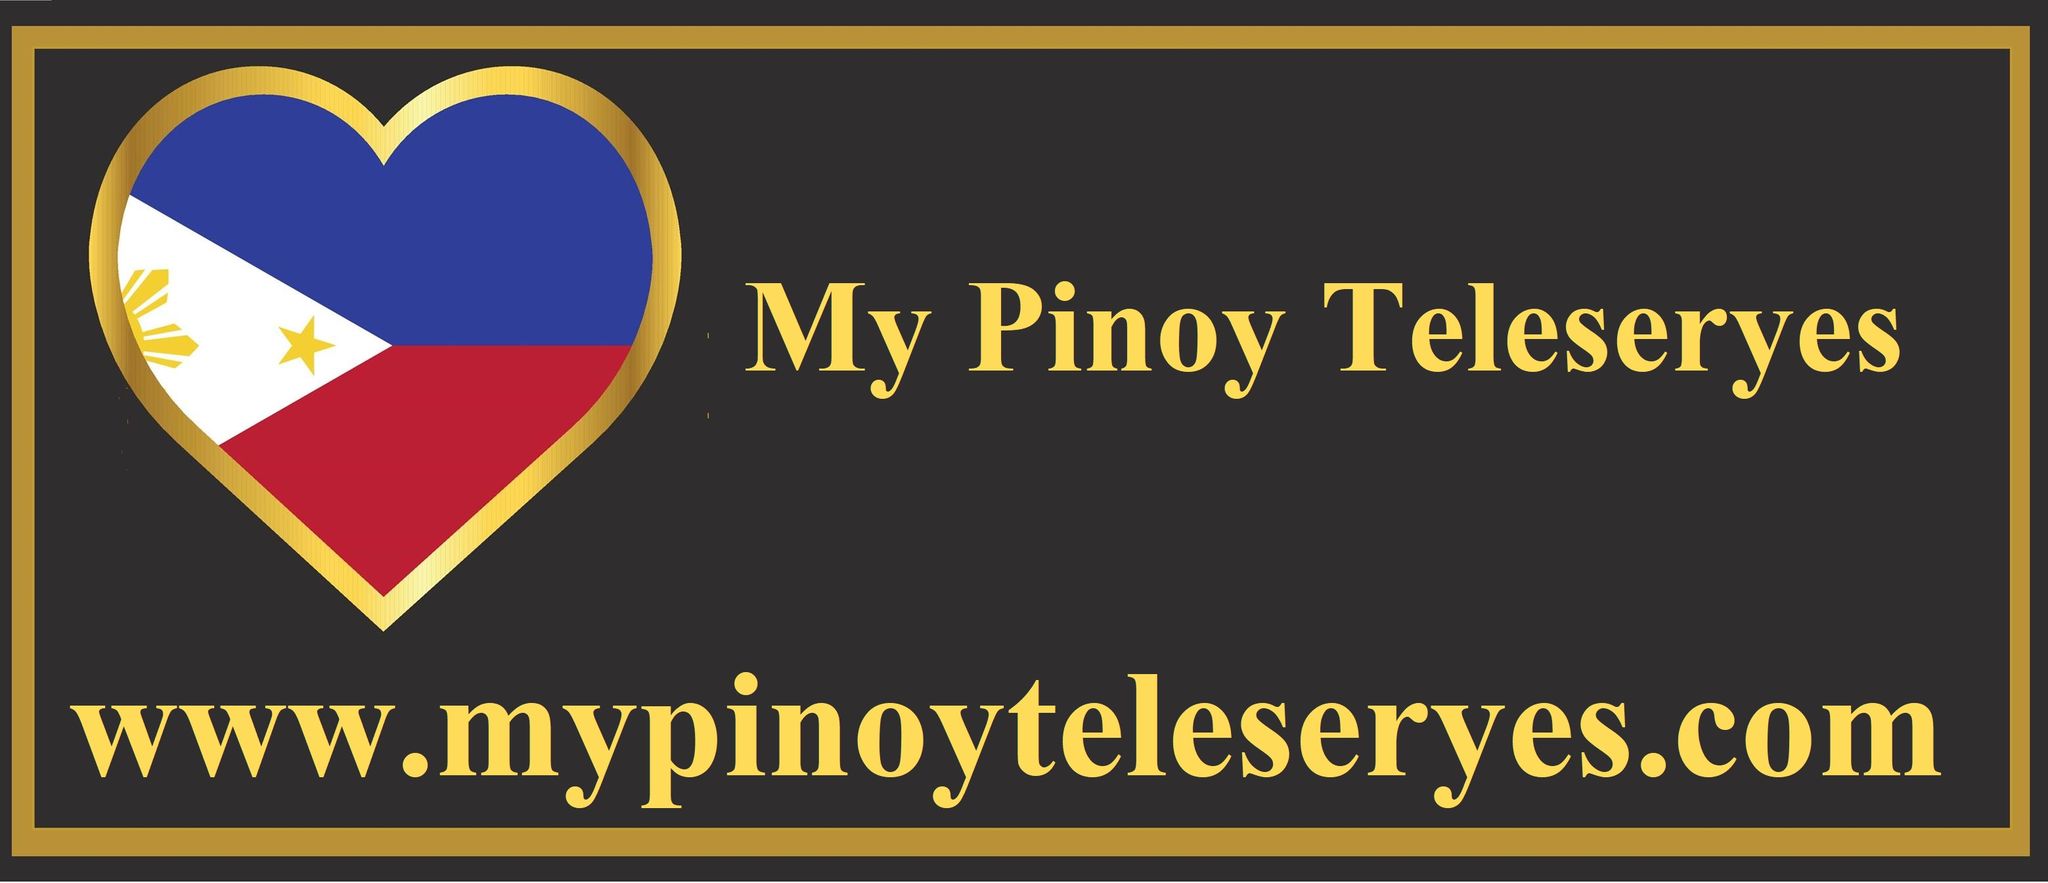 My Pinoy Teleserye Logo